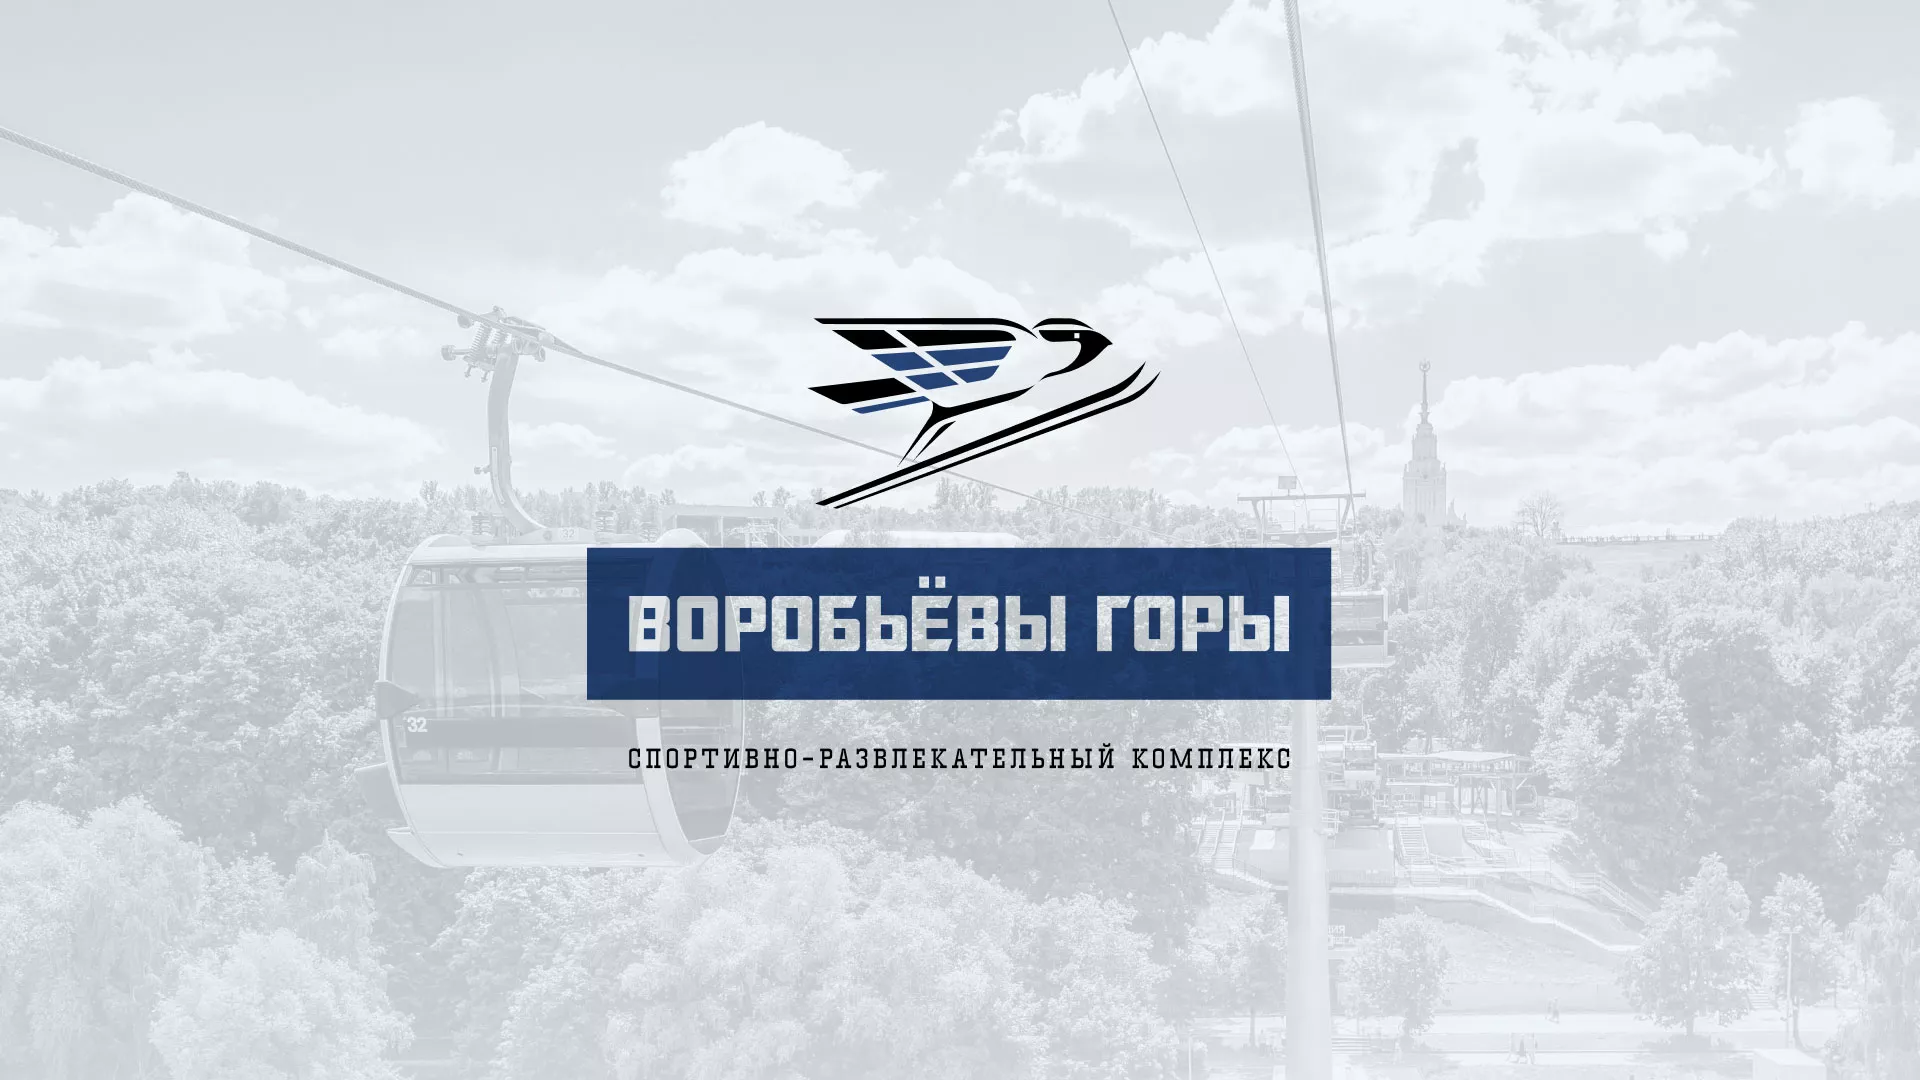 Разработка сайта в Кирове для спортивно-развлекательного комплекса «Воробьёвы горы»